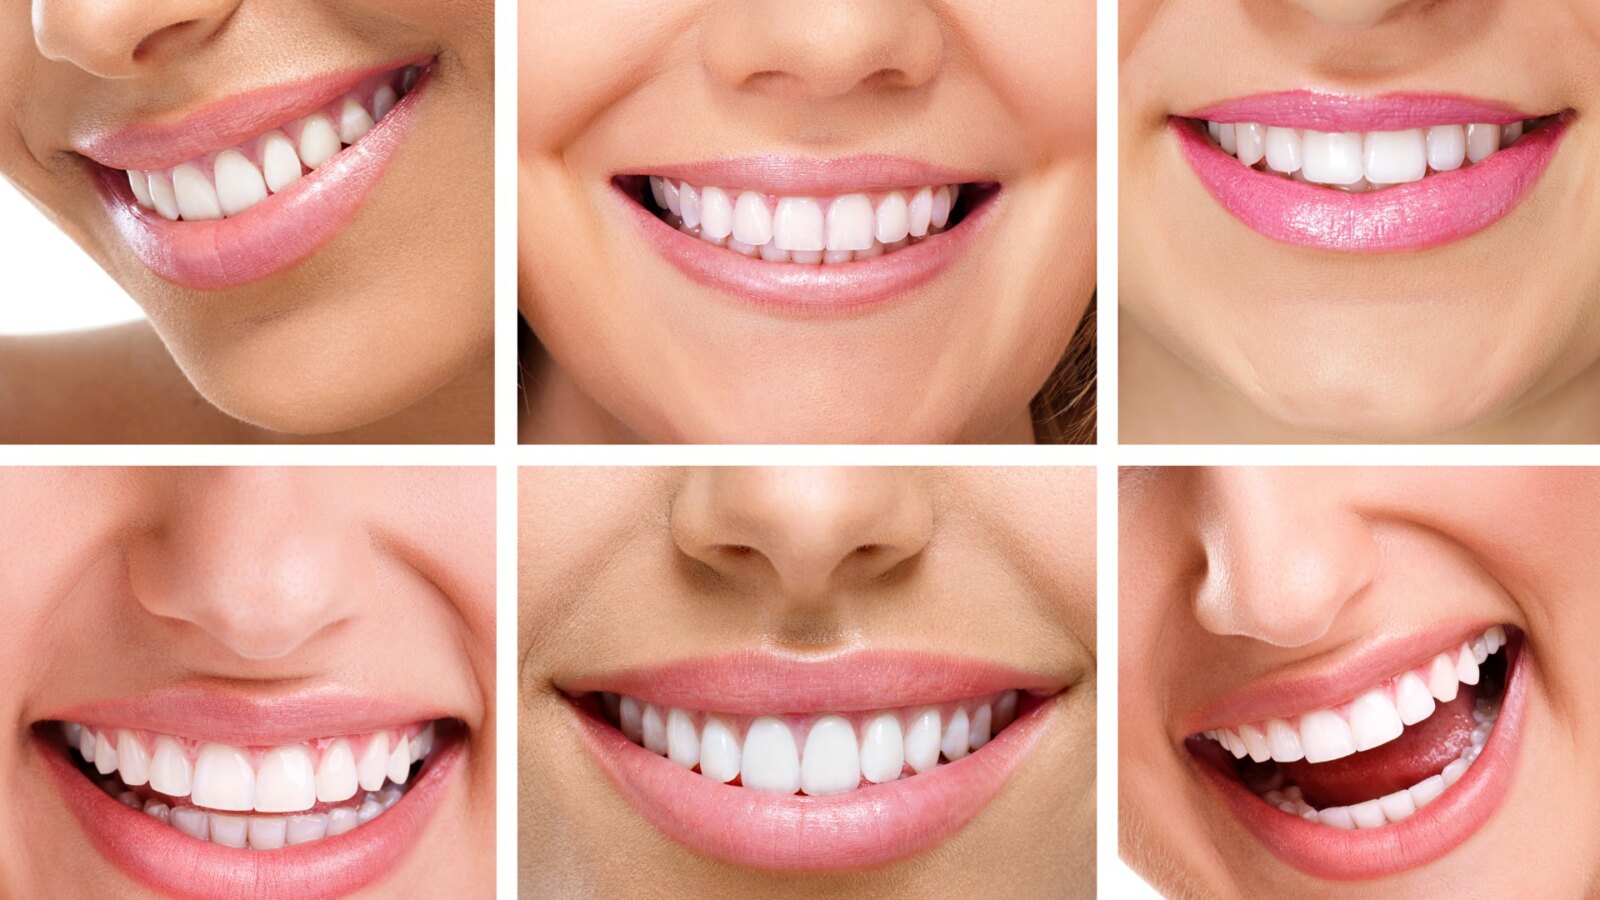 Implantacja natychmiastowa umożliwia zachowanie efektownego uśmiechu